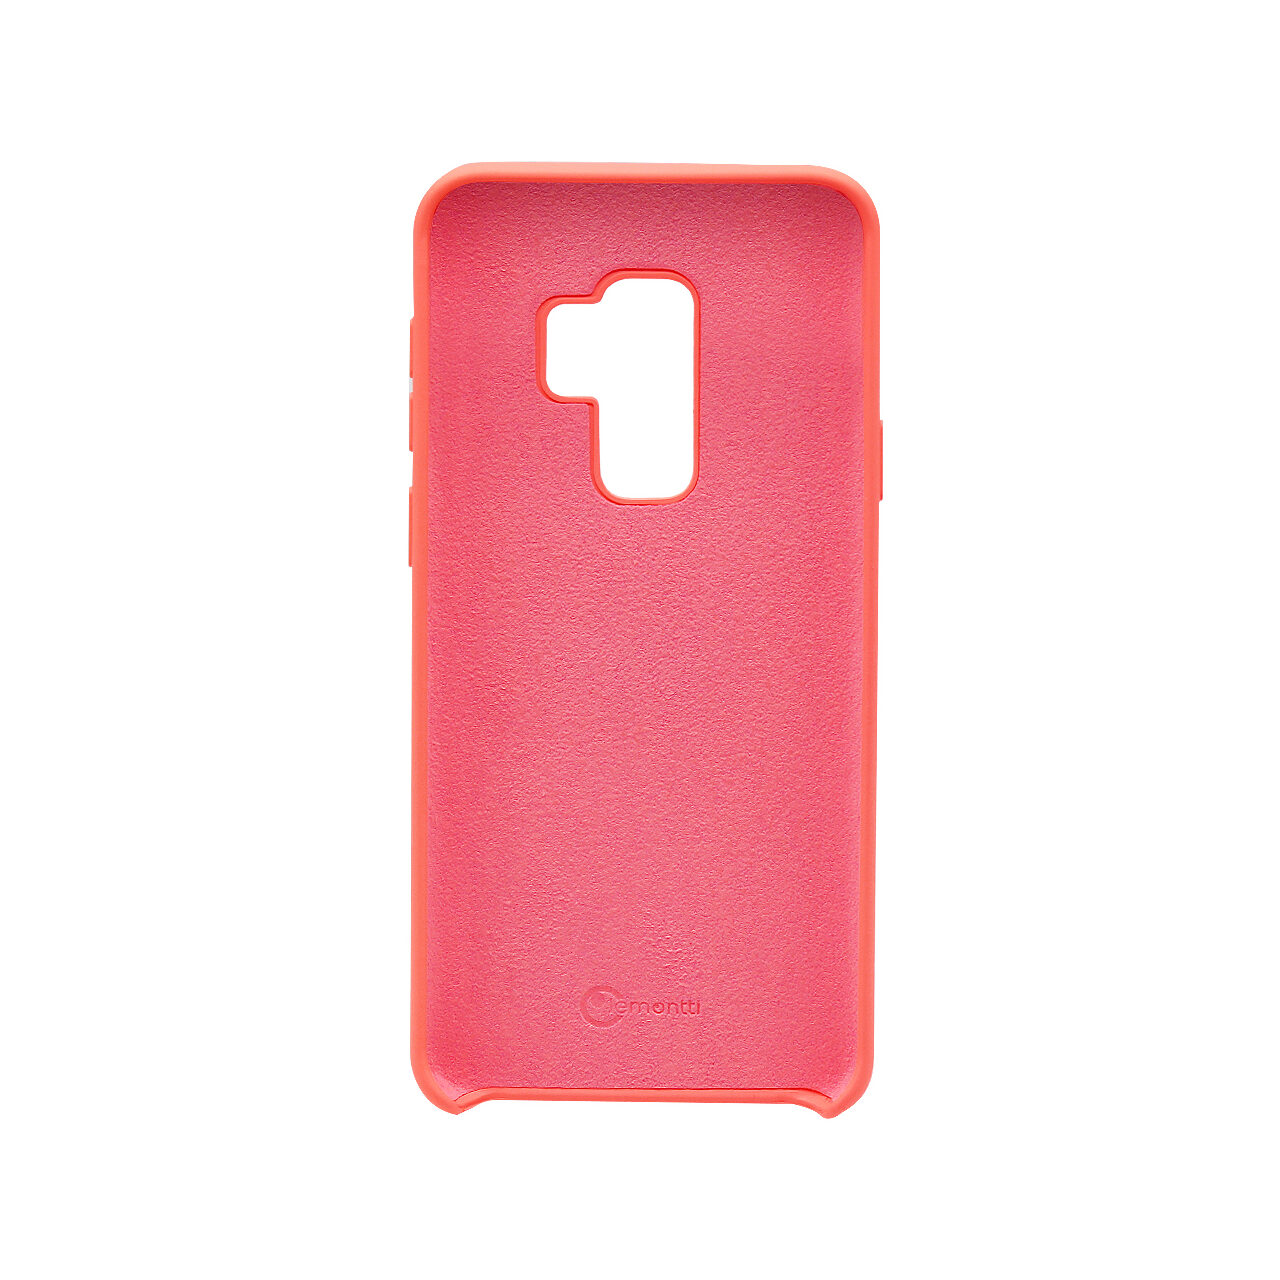 Carcasa Samsung Galaxy S9 Plus G965 Lemontti Aqua Peach Pink thumb